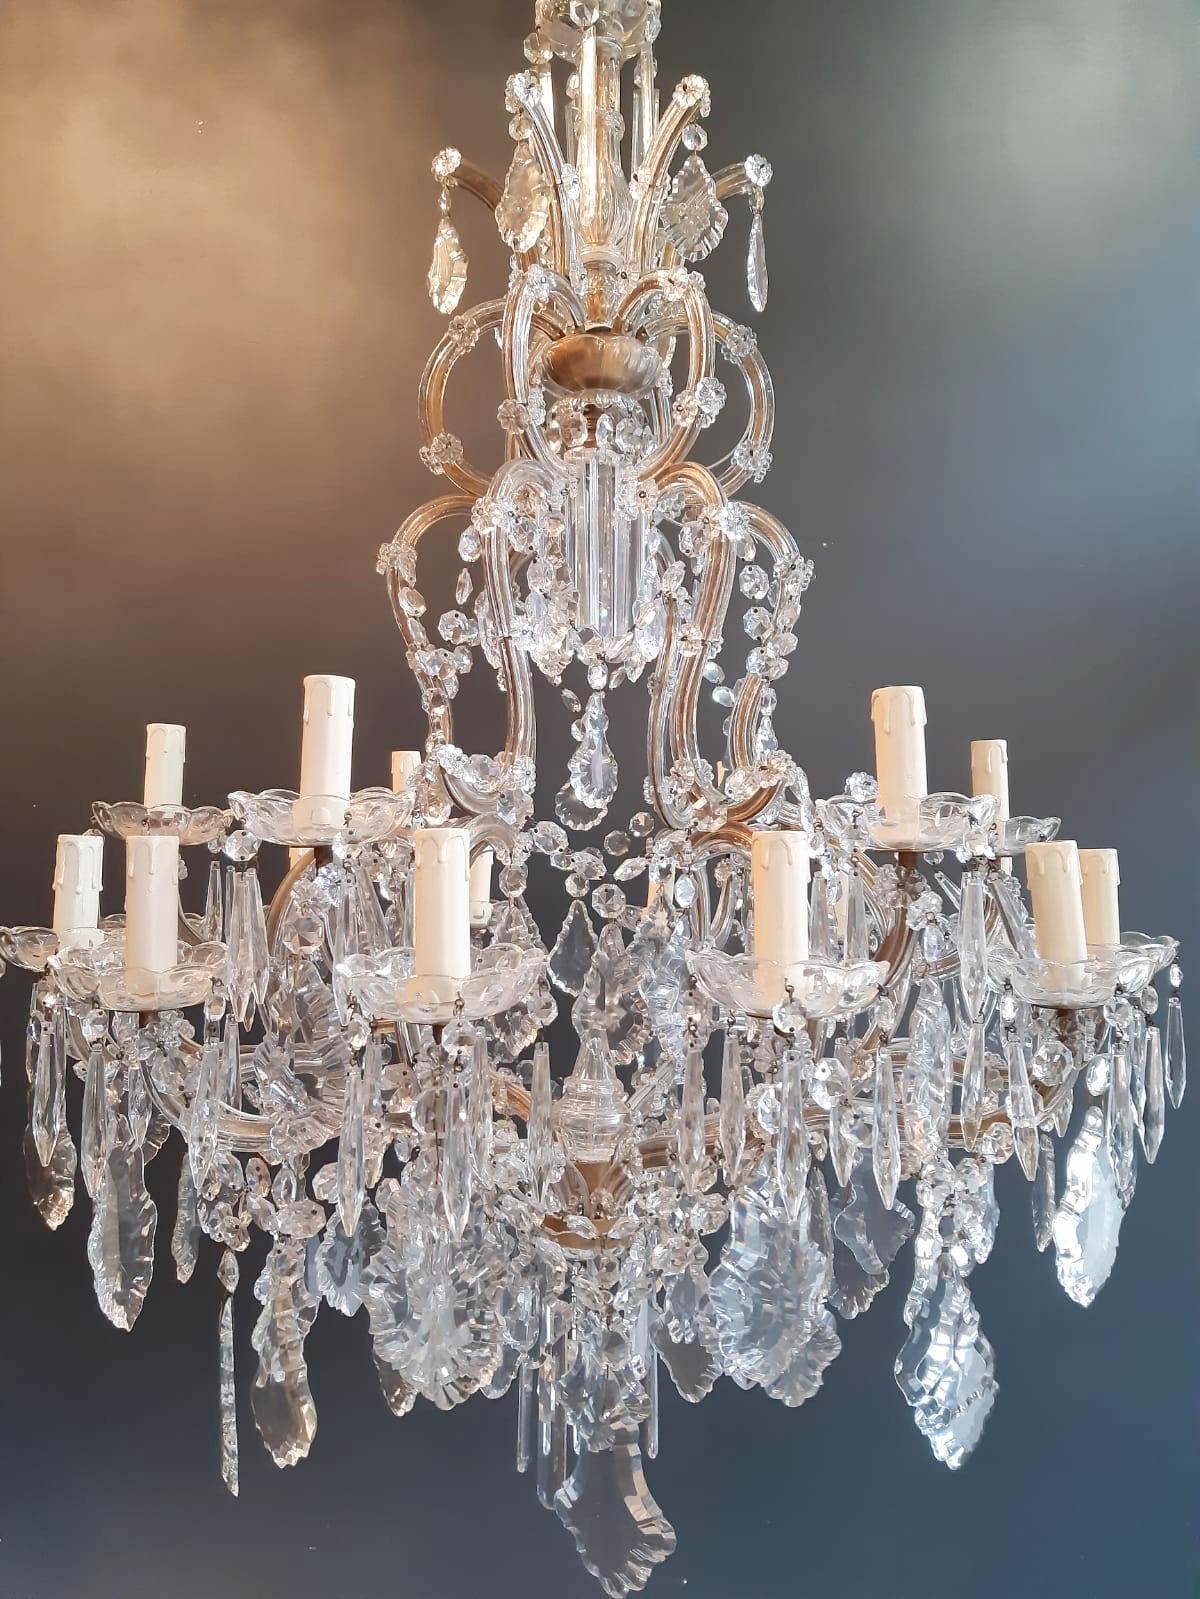 Nineteen-Light Maria Theresa Chandelier Antique Ceiling Lamp Lustre Art Nouveau 1